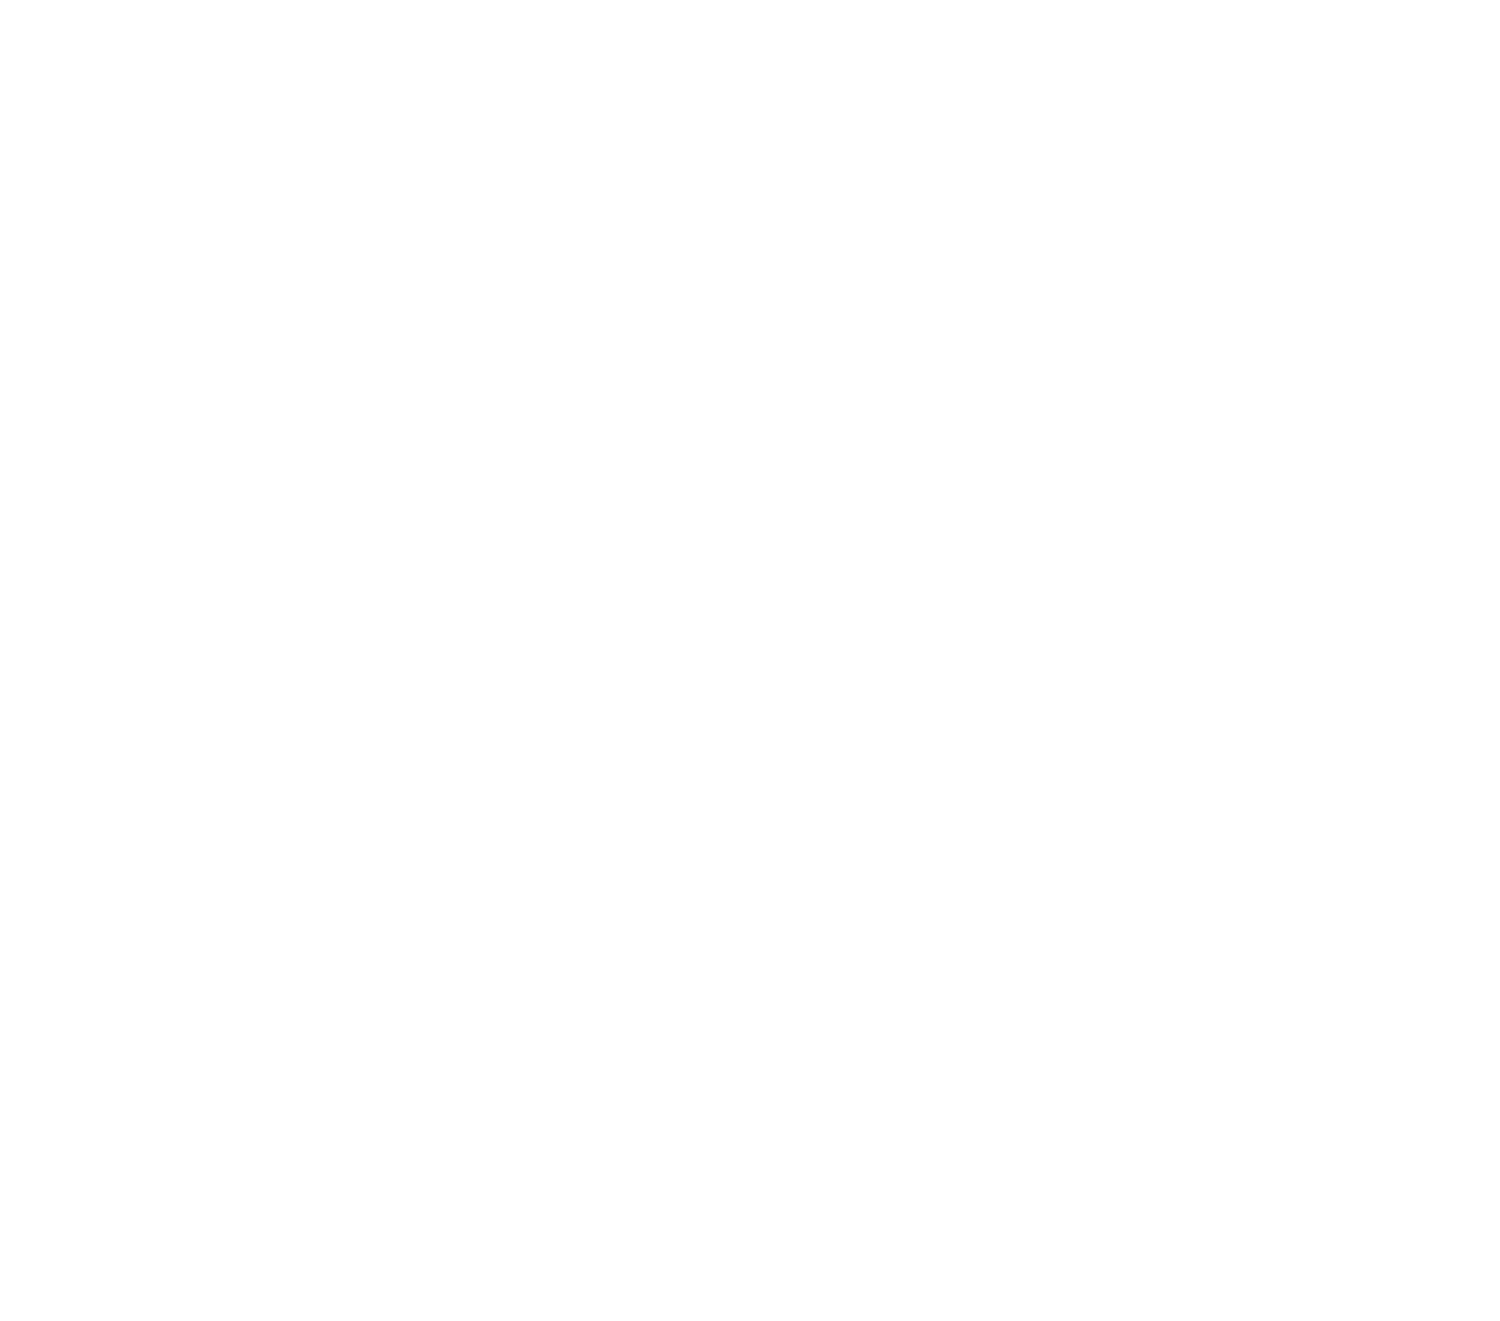 Cedar Motor Inn